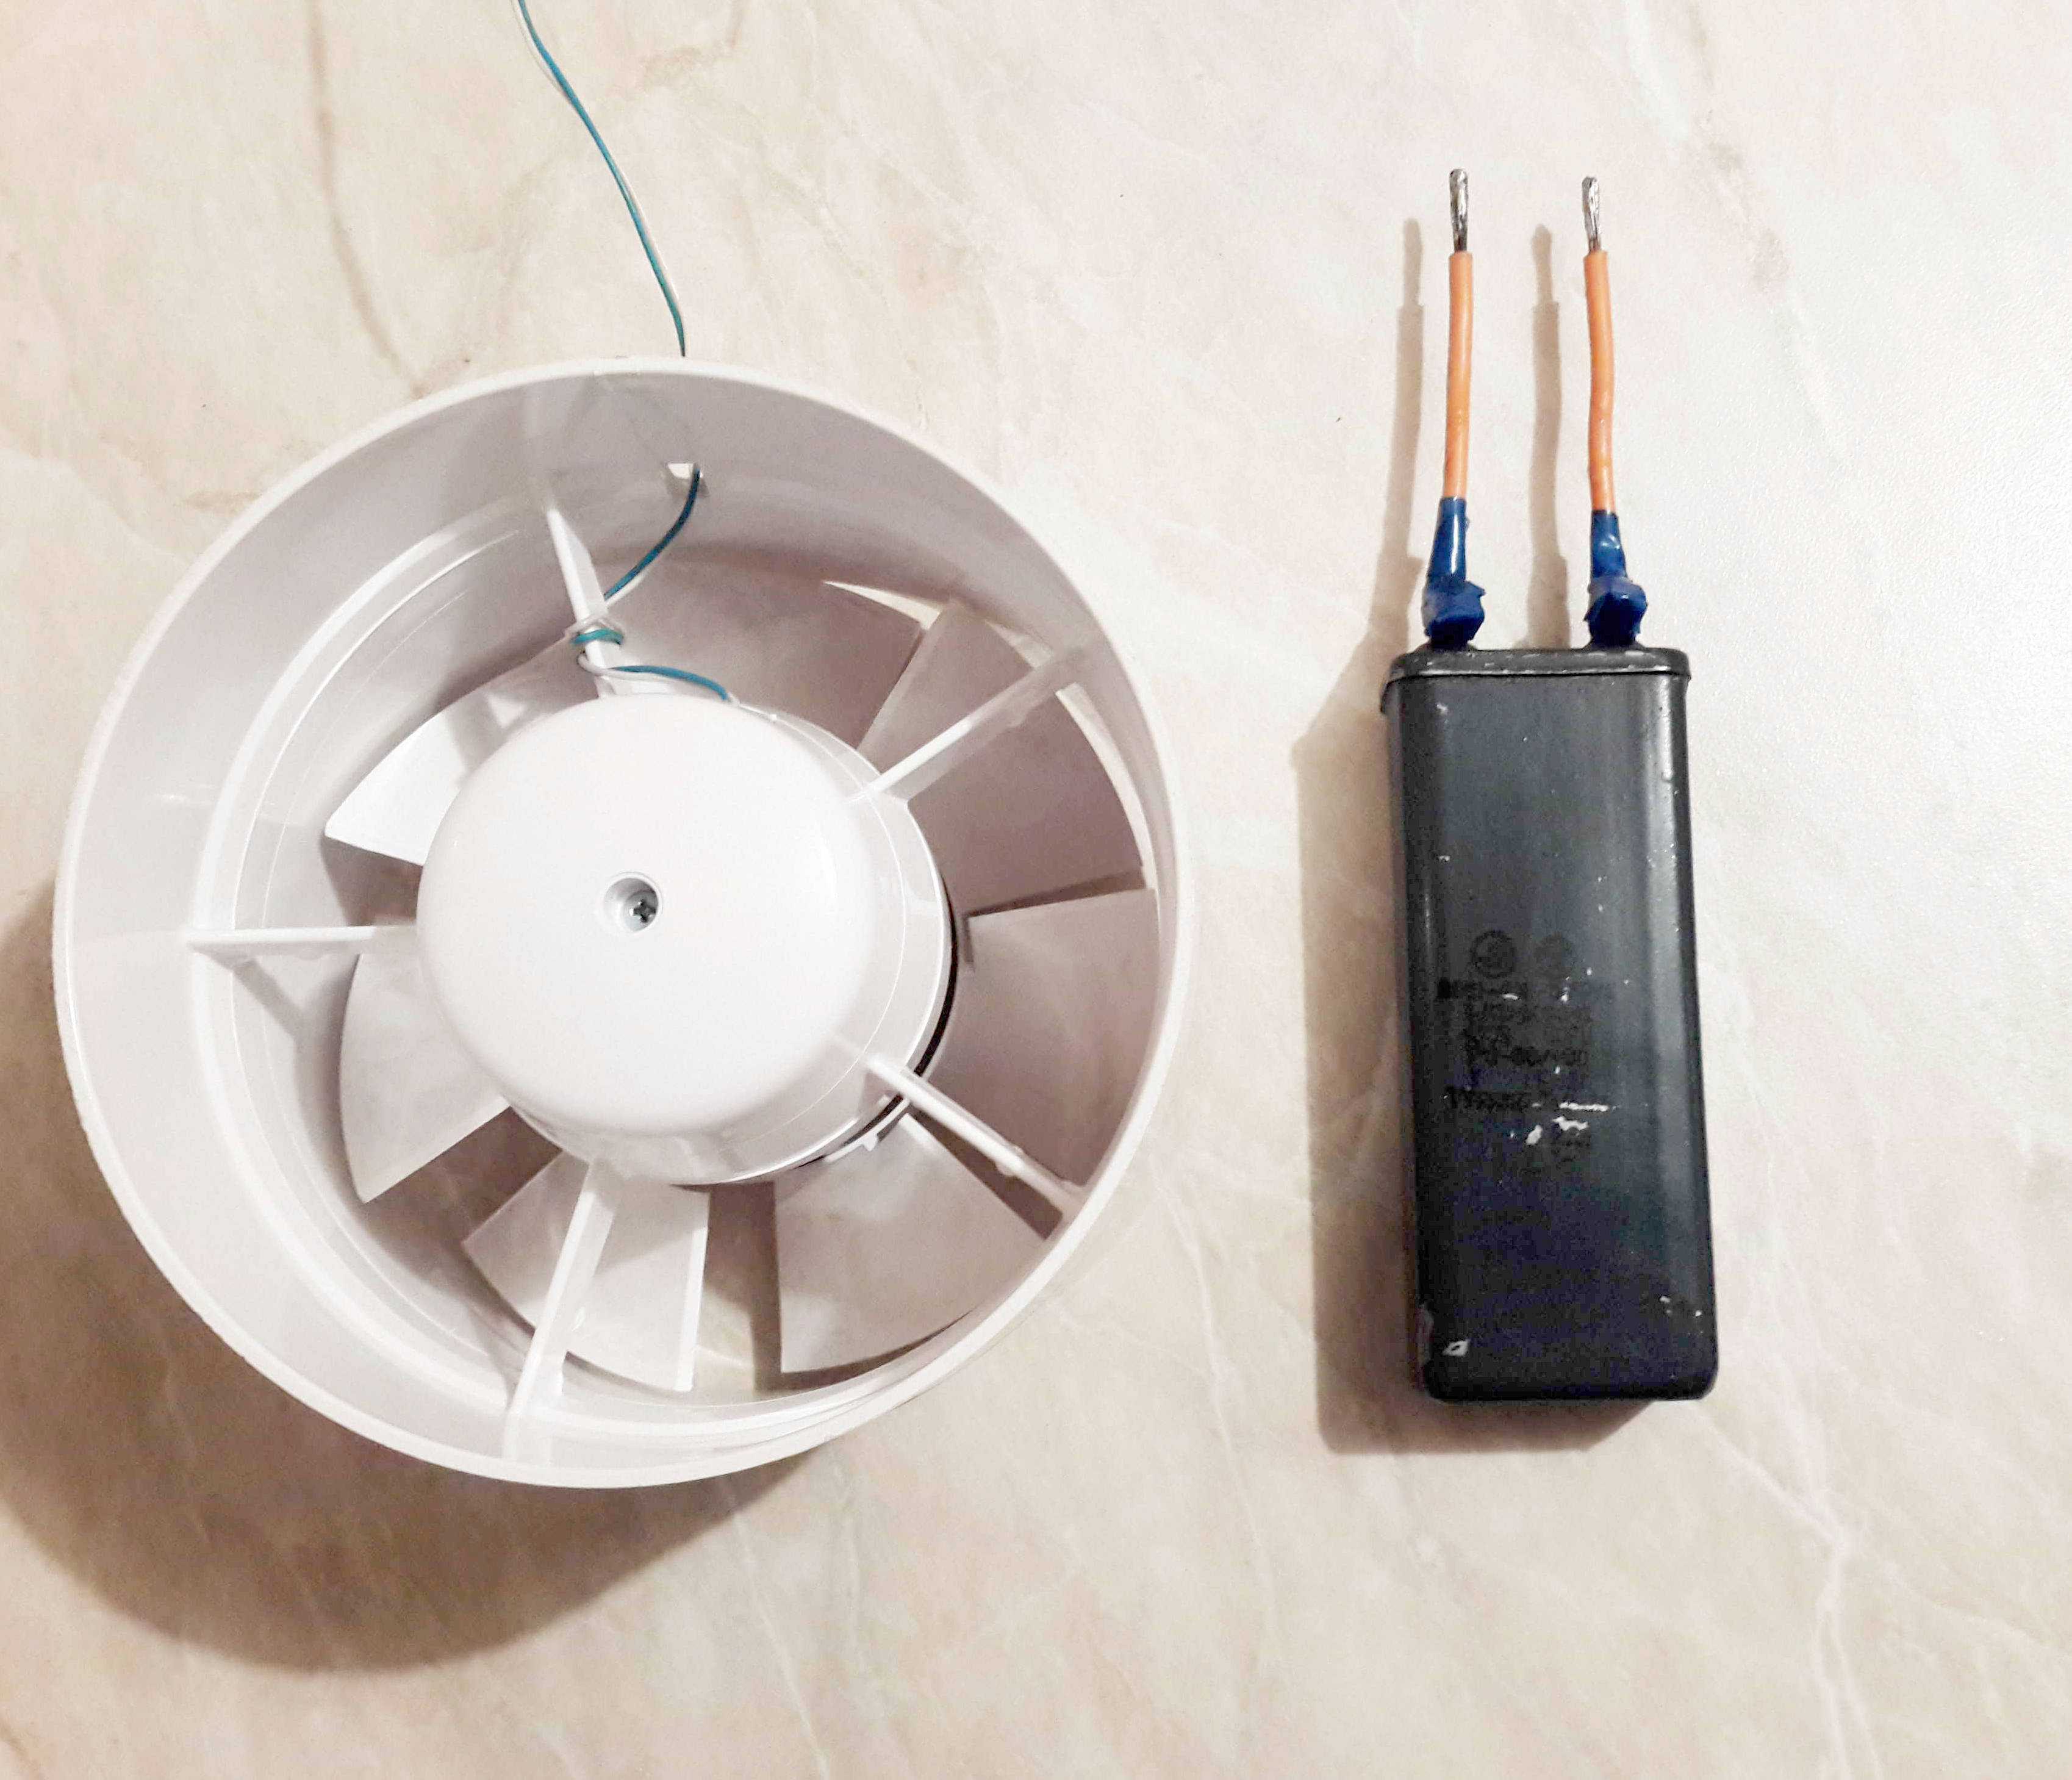 Подключение таймера вытяжного вентилятора в санузле